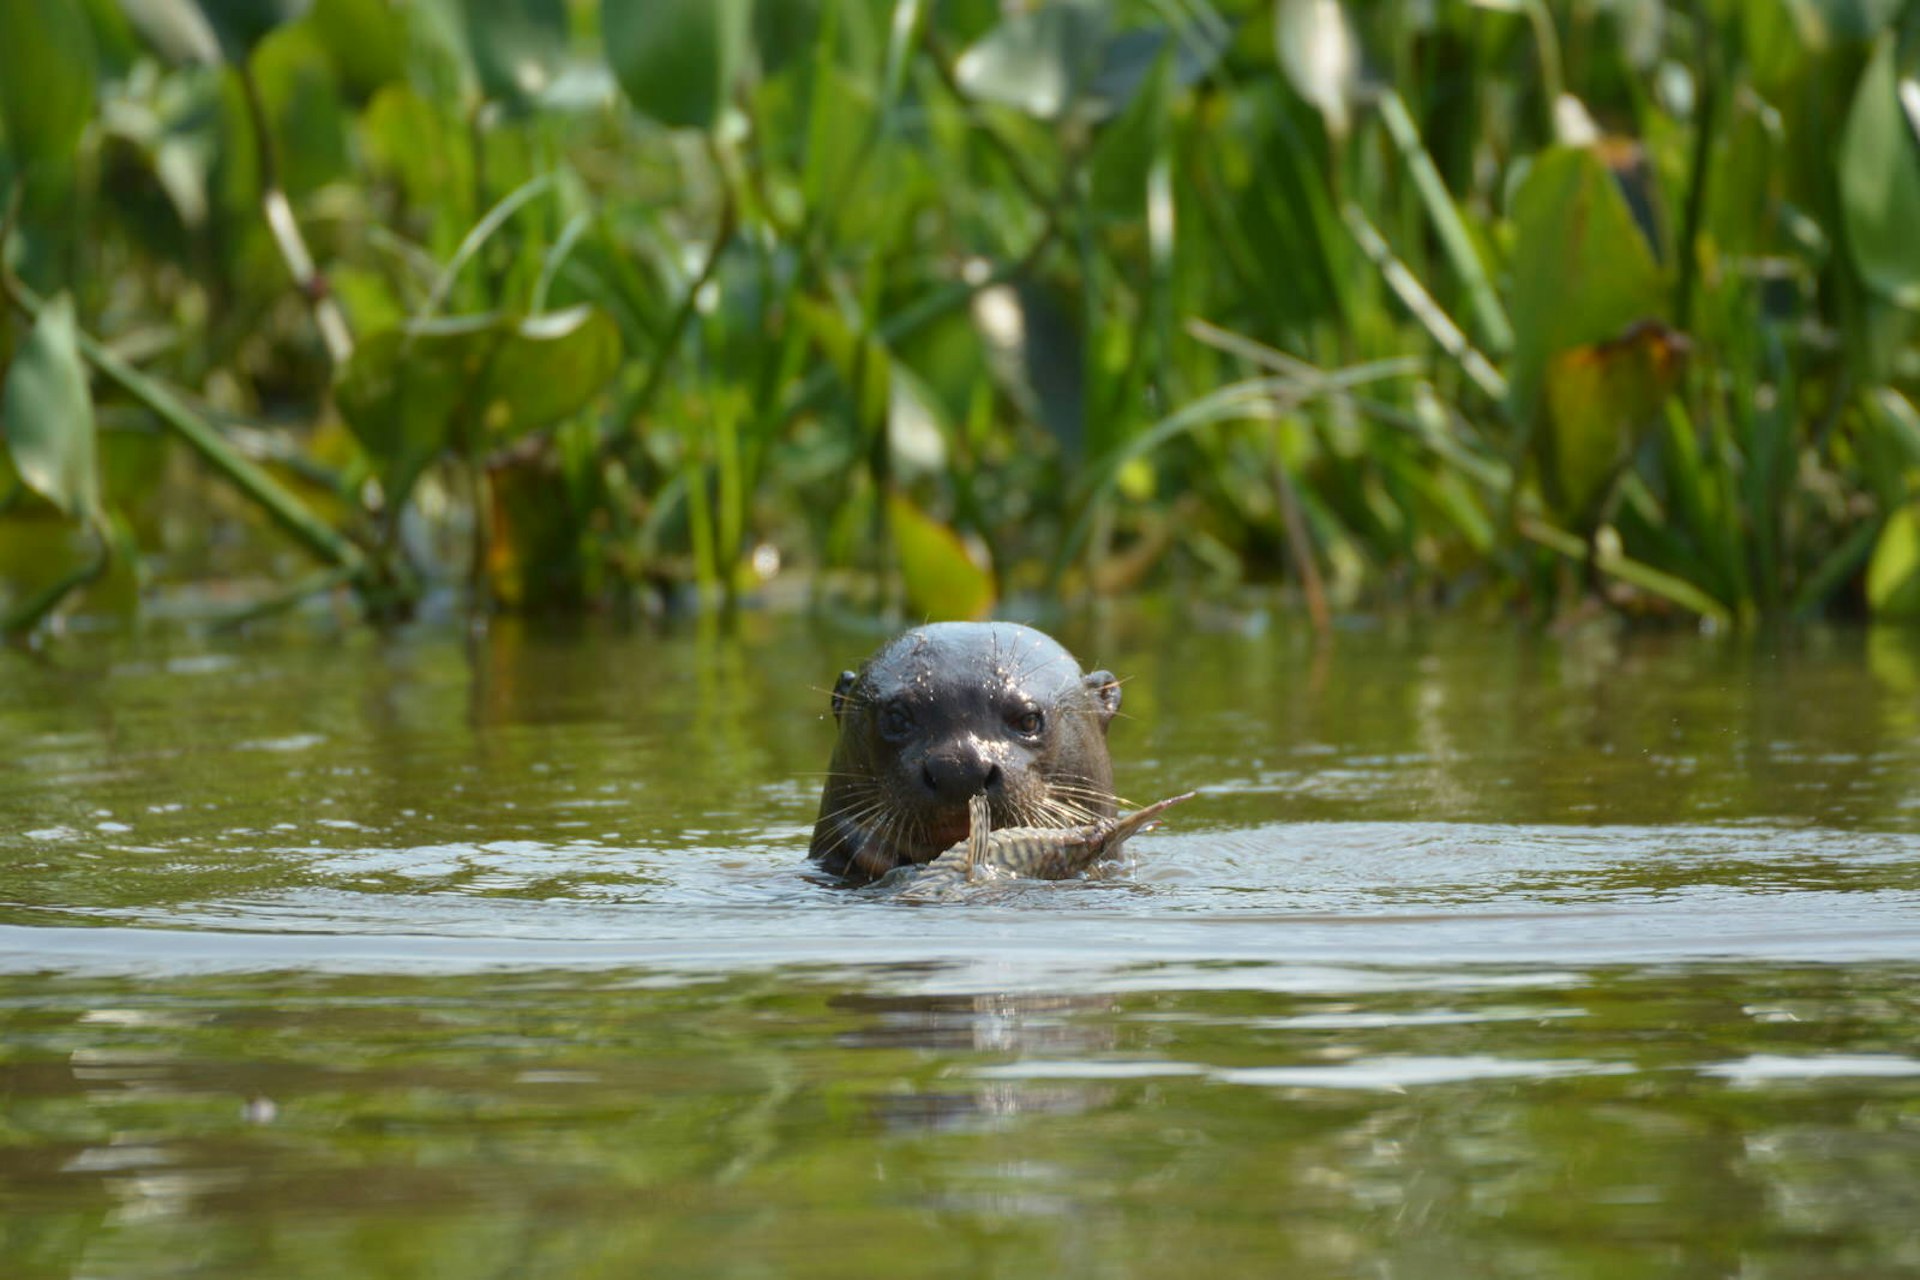 Giant river otter, Pantanal, Brazil © Nicola B / Shutterstock